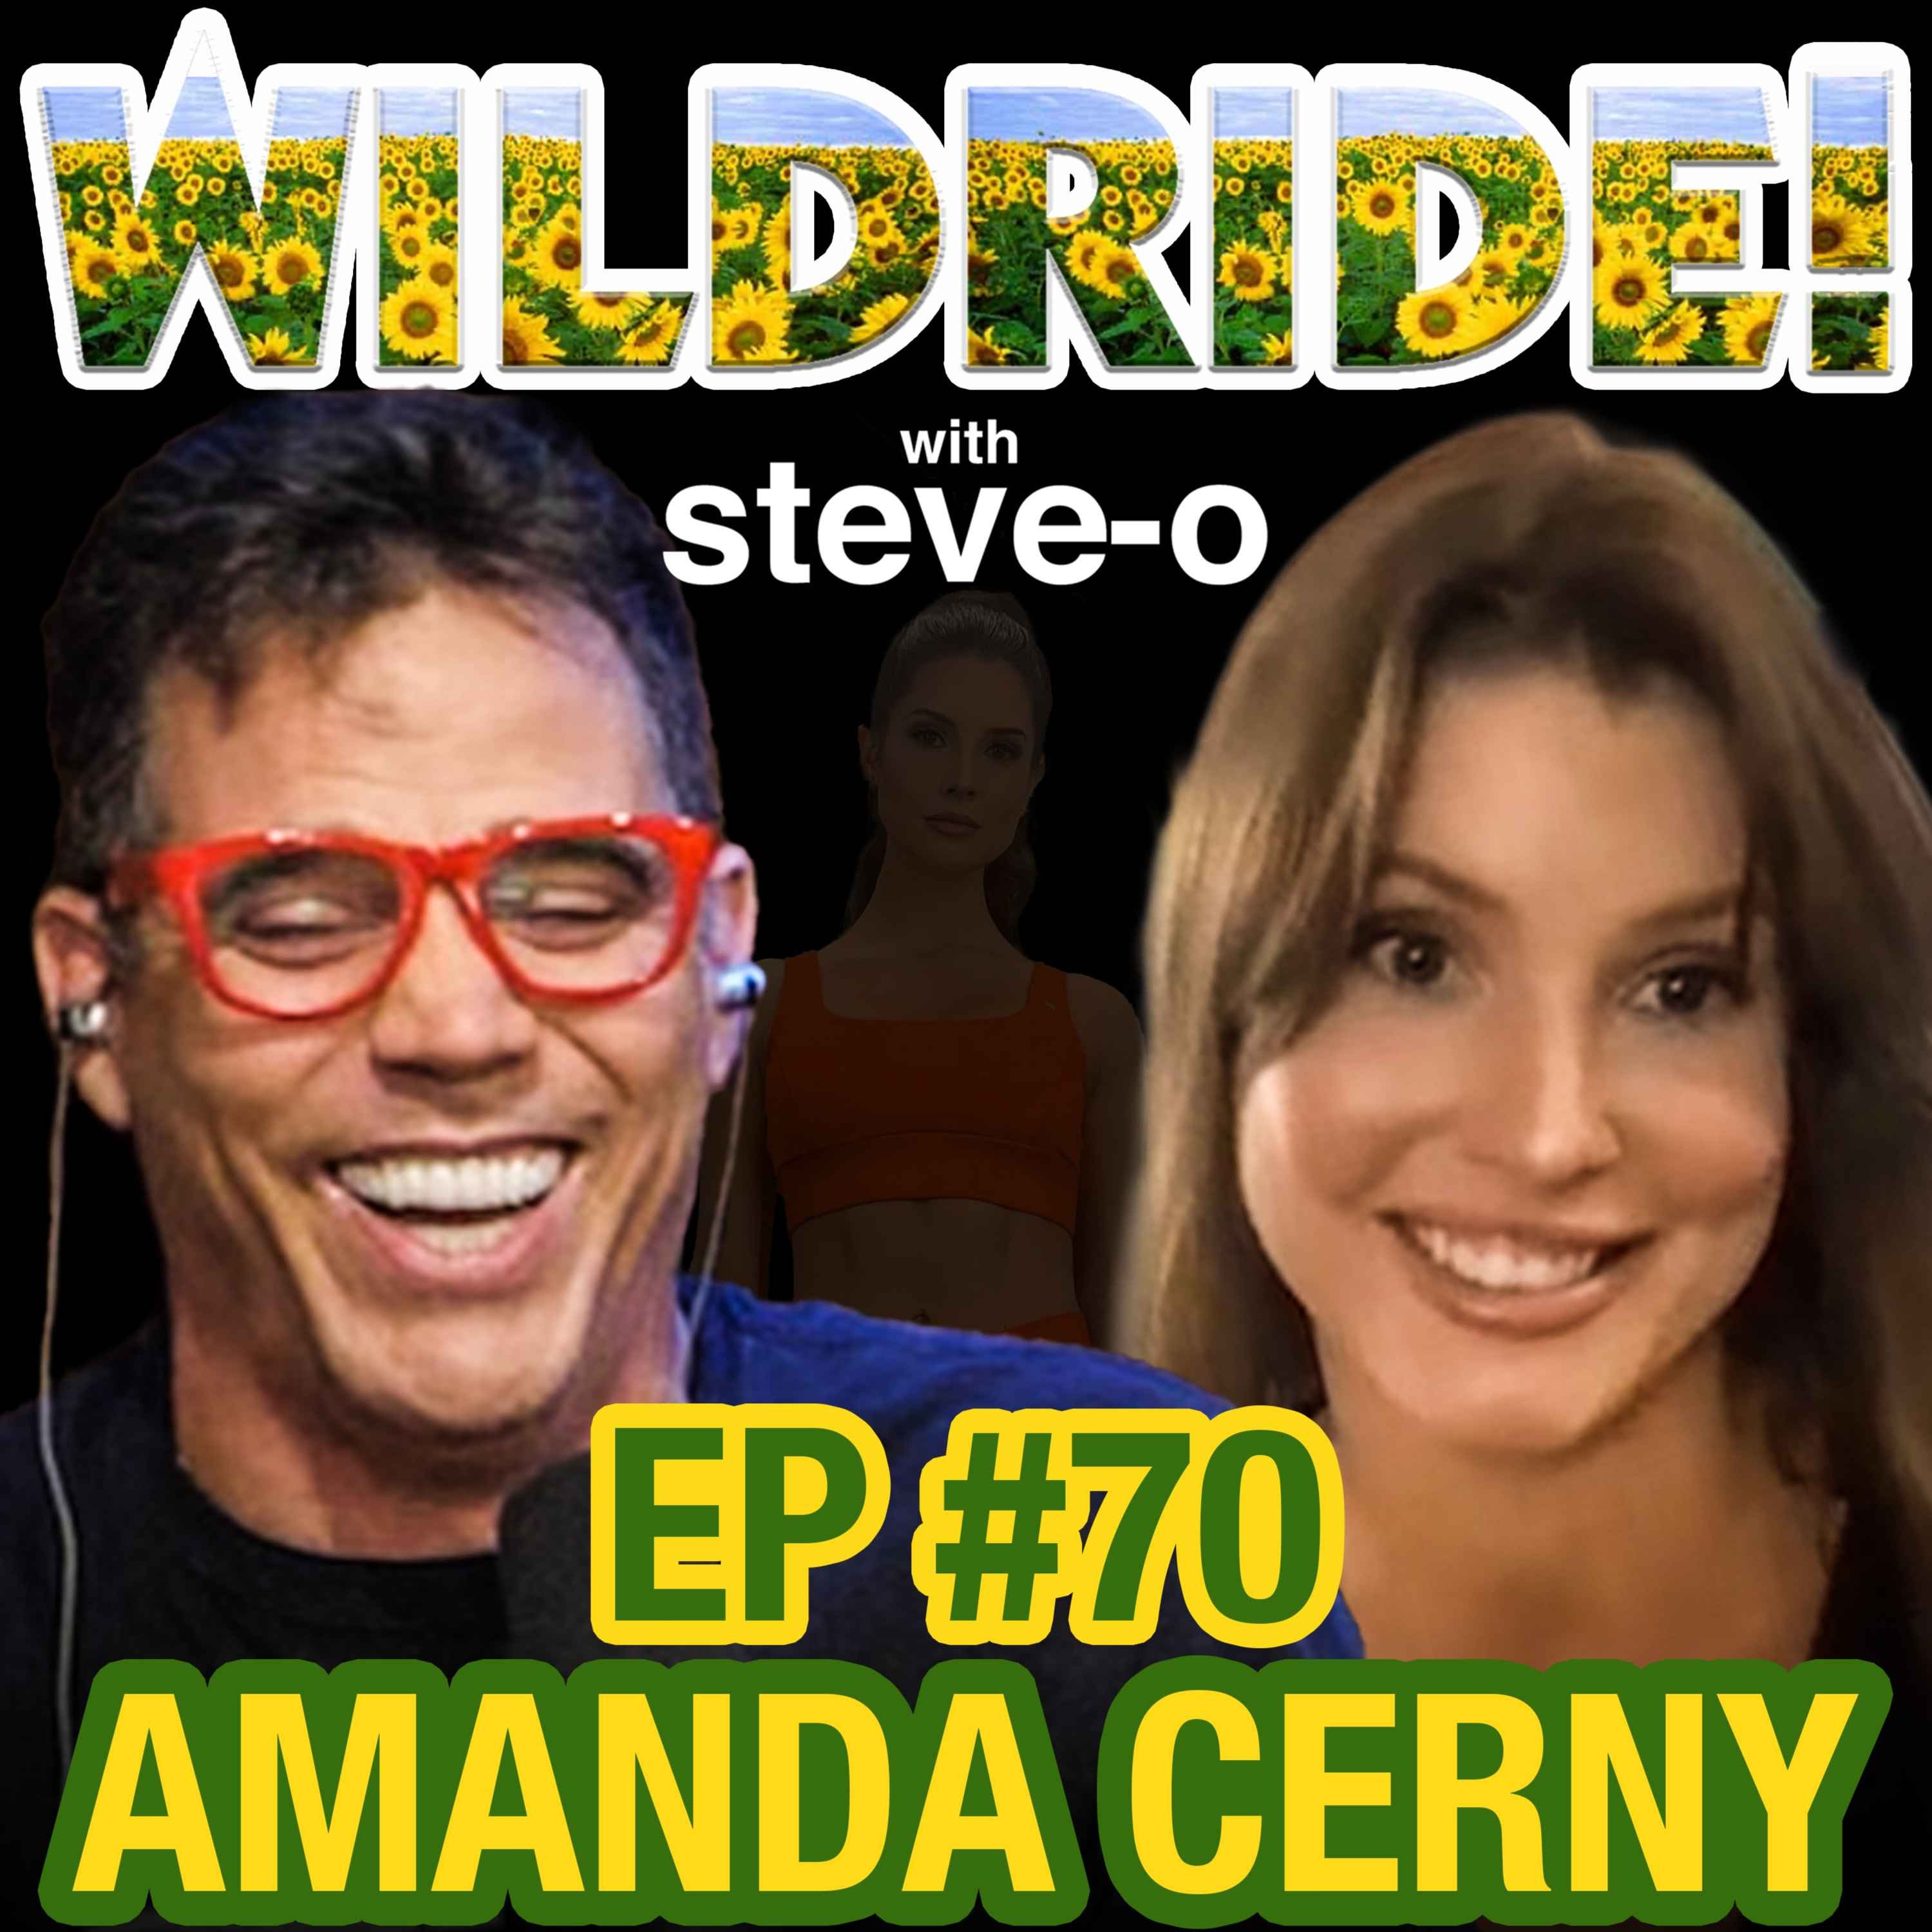 Amanda Cerny Sex Porn - Amanda Cerny â€“ Wild Ride! with Steve-O â€“ Podcast â€“ Podtail